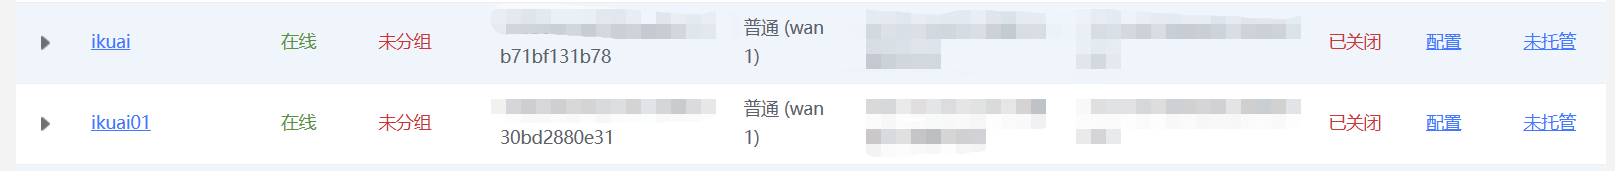 简单设置SD-WAN即可实现爱快两台路由的lan与lan互访教程